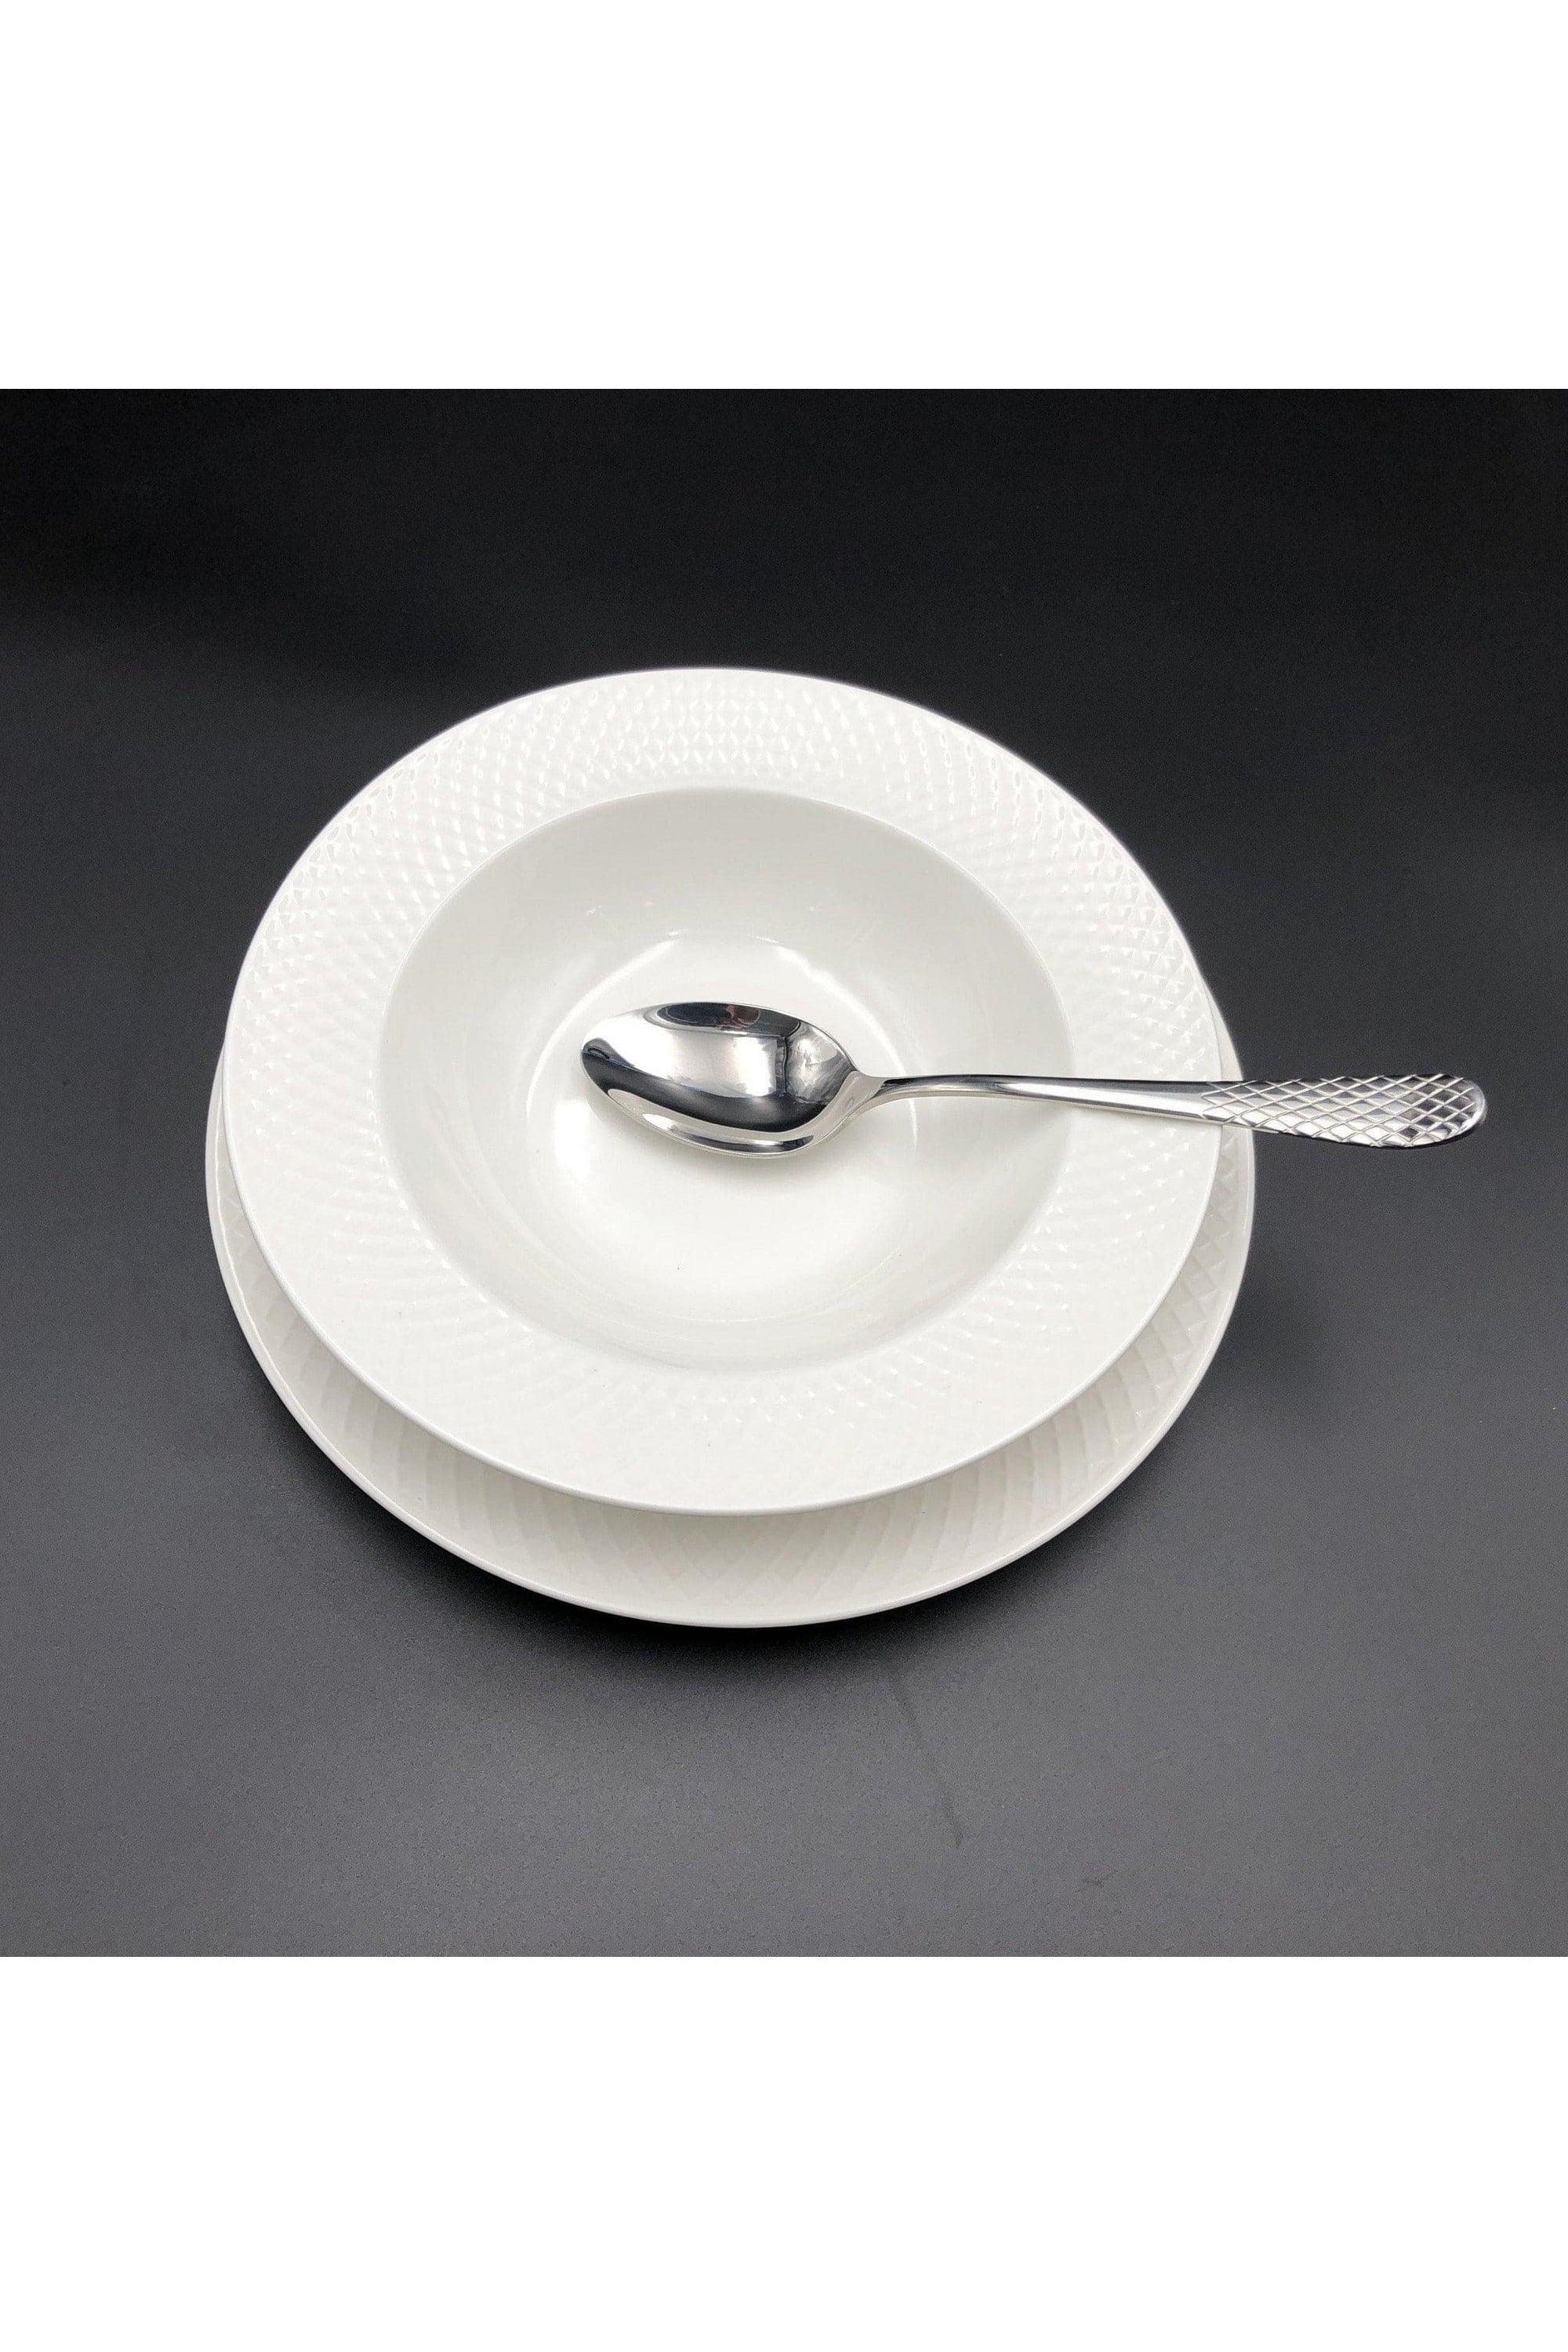 Fine Porcelain Julia Deep Soup Plate Set -18 PC - SwagglyLife Home & Fashion